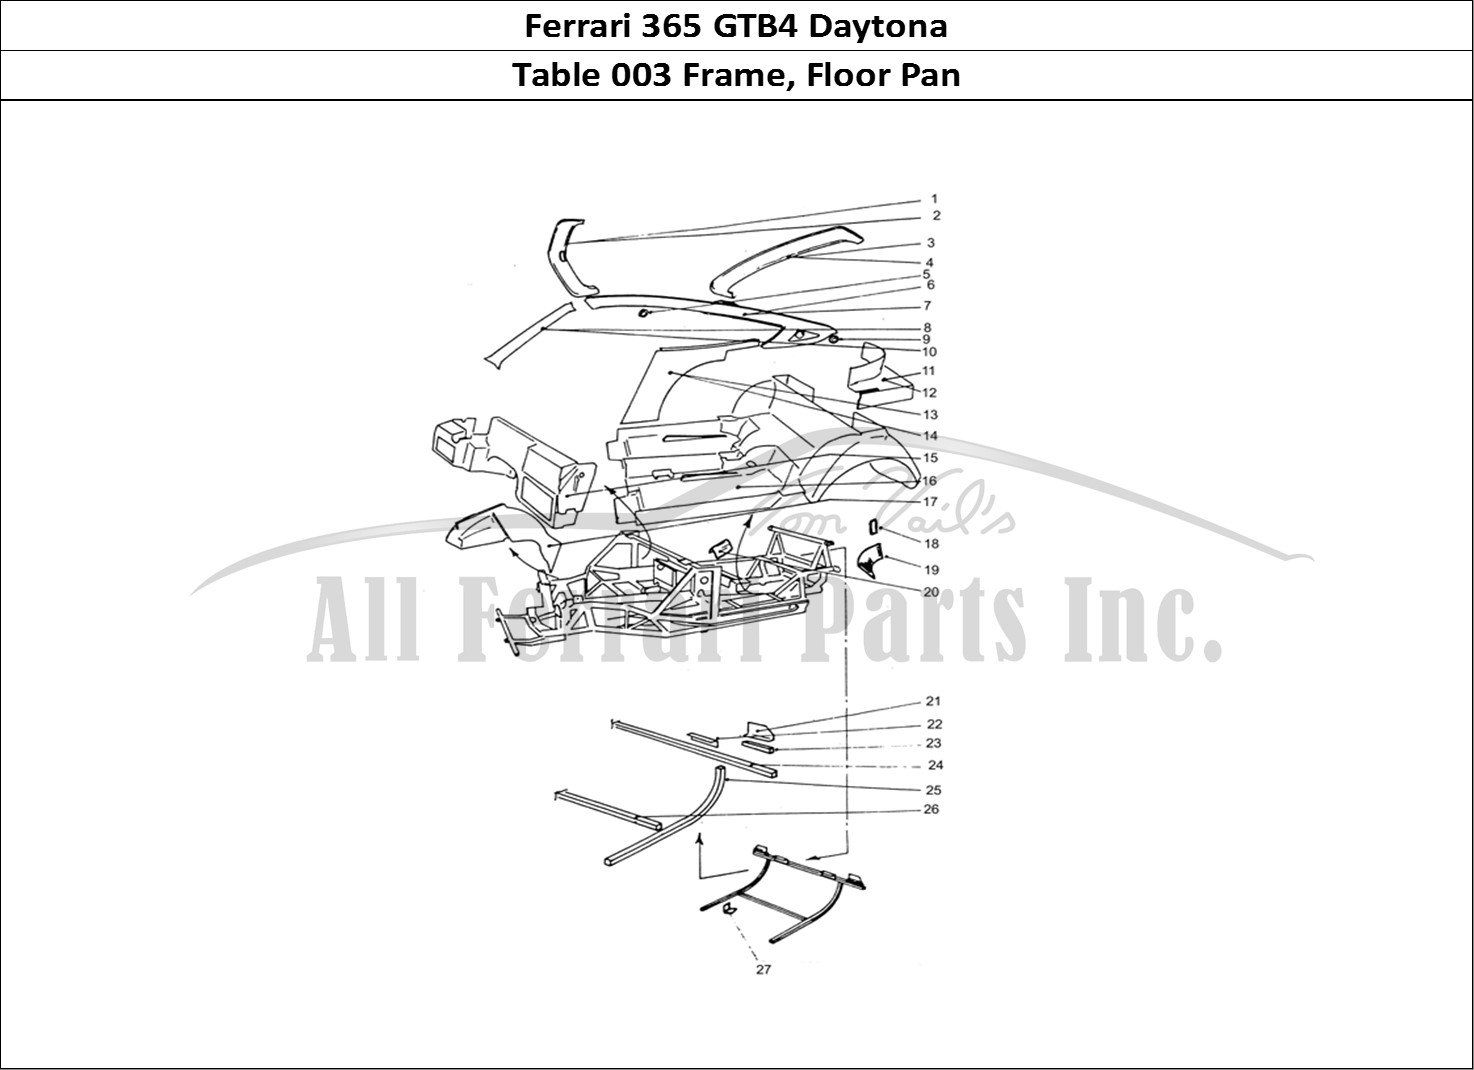 Ferrari Parts Ferrari 365 GTB4 Daytona (Coachwork) Page 003 Frame work & Floor pan